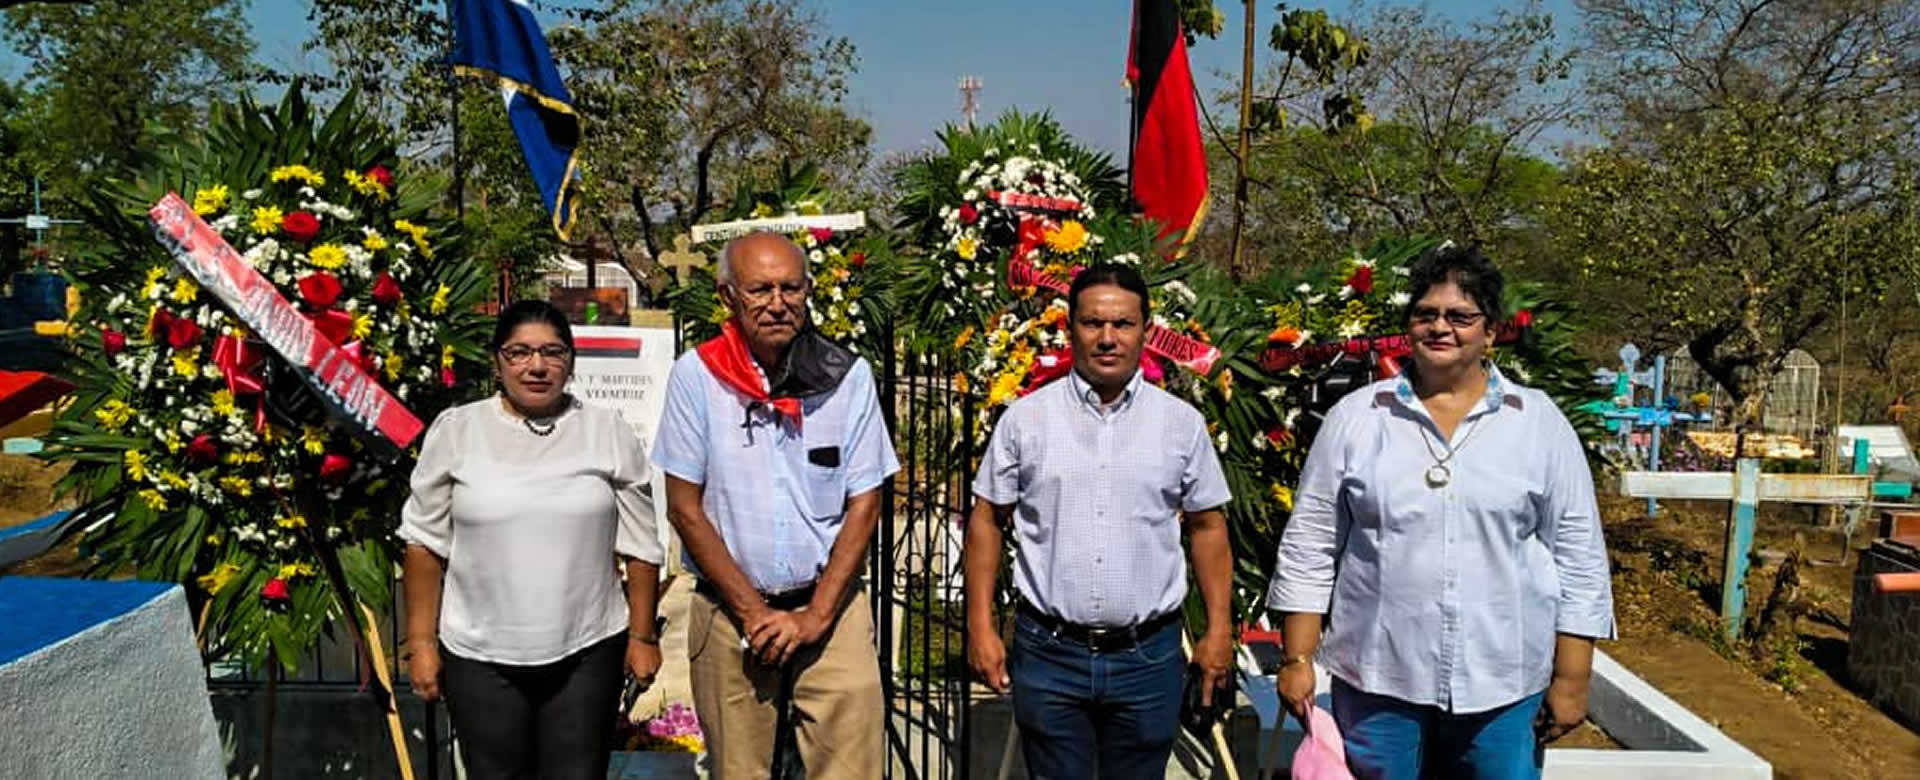 León conmemora el 41 aniversario de la gesta heroica de Veracruz